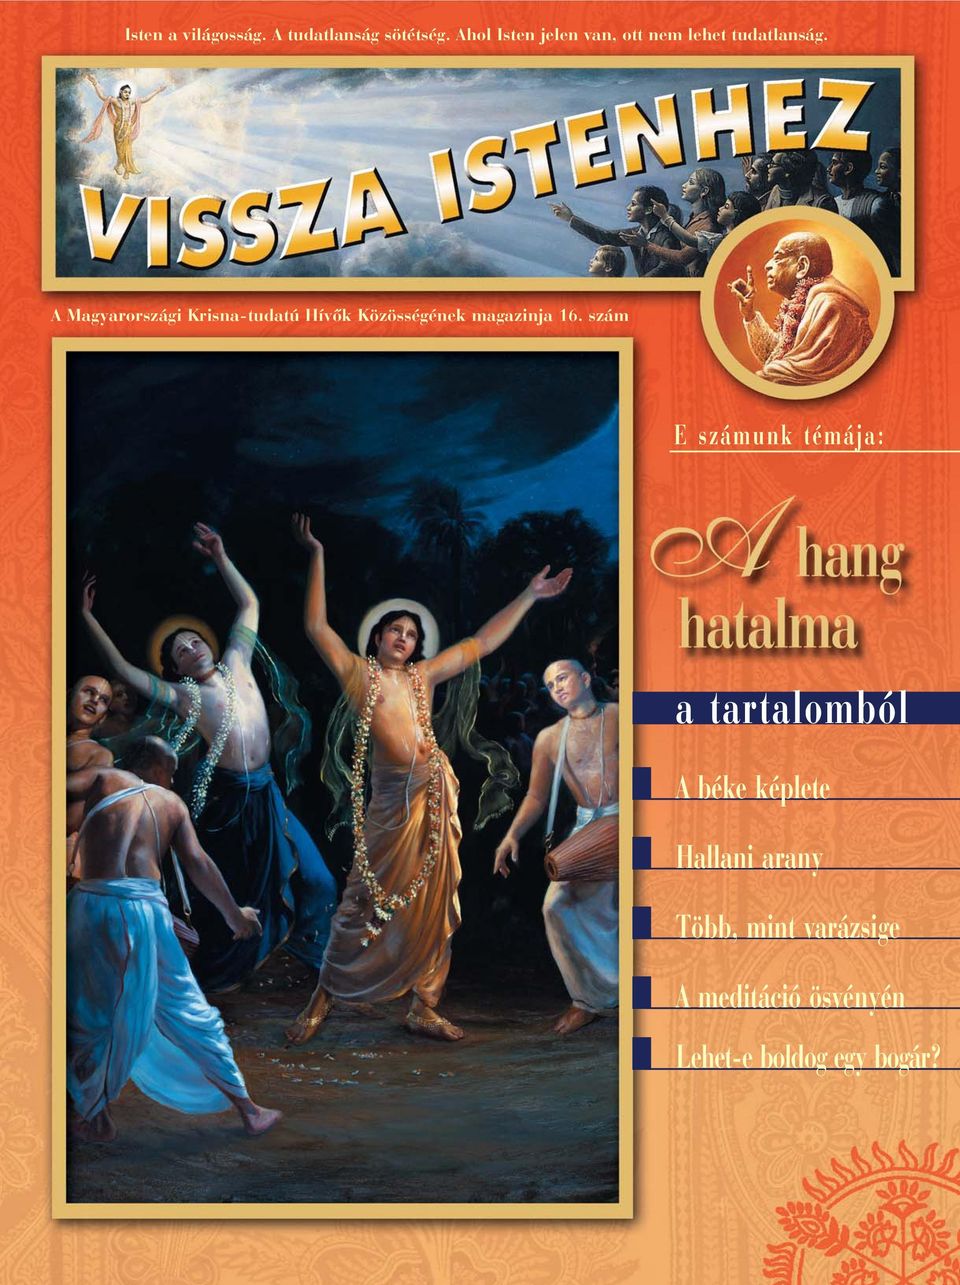 A Magyarországi Krisna-tudatú Hívõk Közösségének magazinja 16.